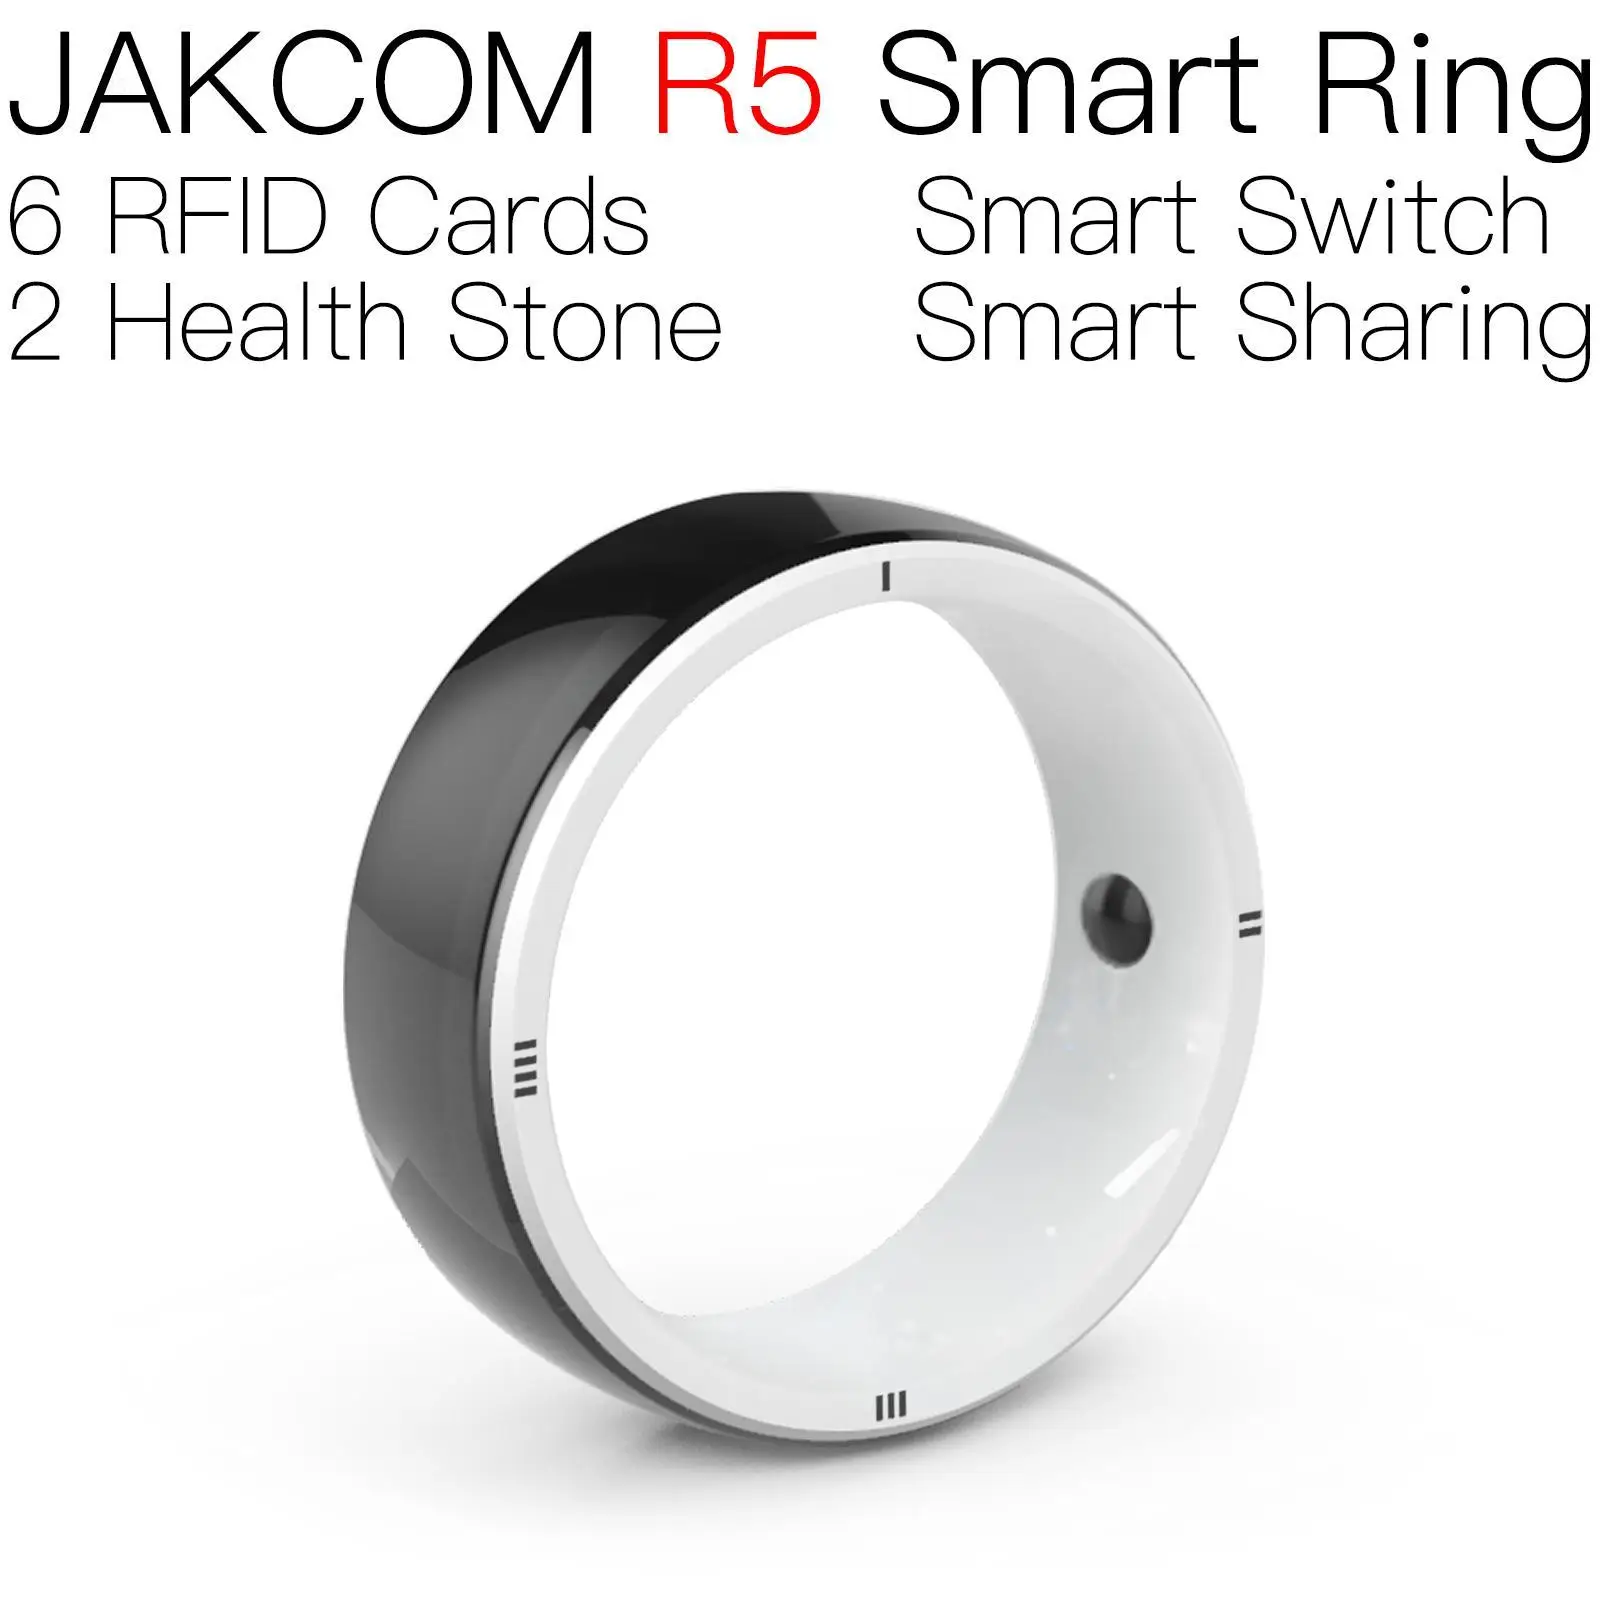 

Умное кольцо JAKCOM R5, часы Nice than bigotti, портативный nfc для компьютера, banvie rfid, 125 кГц, защита карт, ветеринарный ультразвук